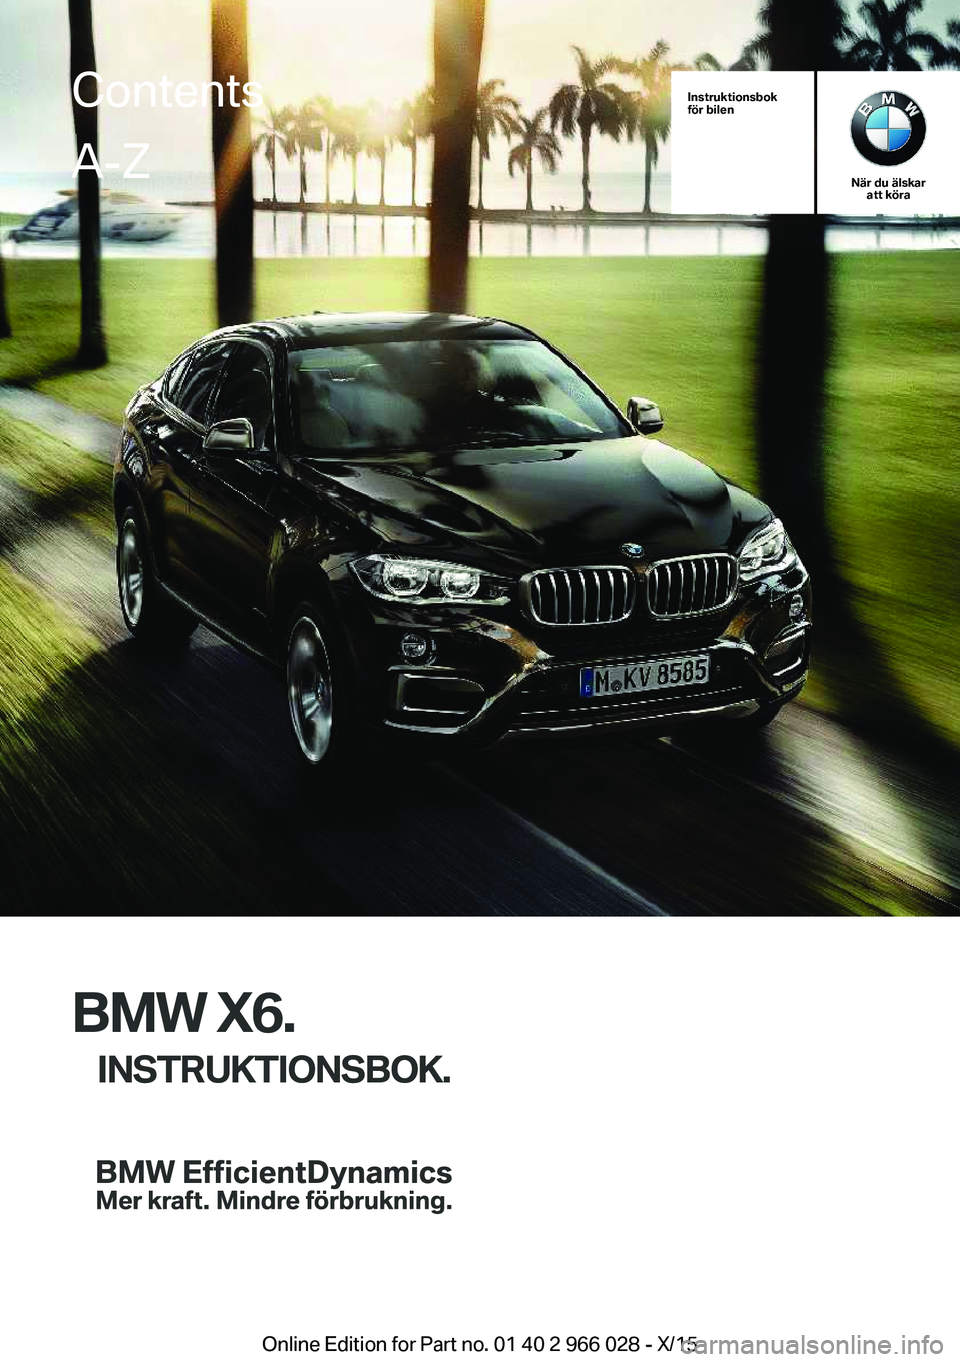 BMW X6 2016  InstruktionsbÖcker (in Swedish) Instruktionsbok
för bilen
När du älskar att köra
BMW X6.
INSTRUKTIONSBOK.
ContentsA-Z
Online Edition for Part no. 01 40 2 966 028 - X/15   